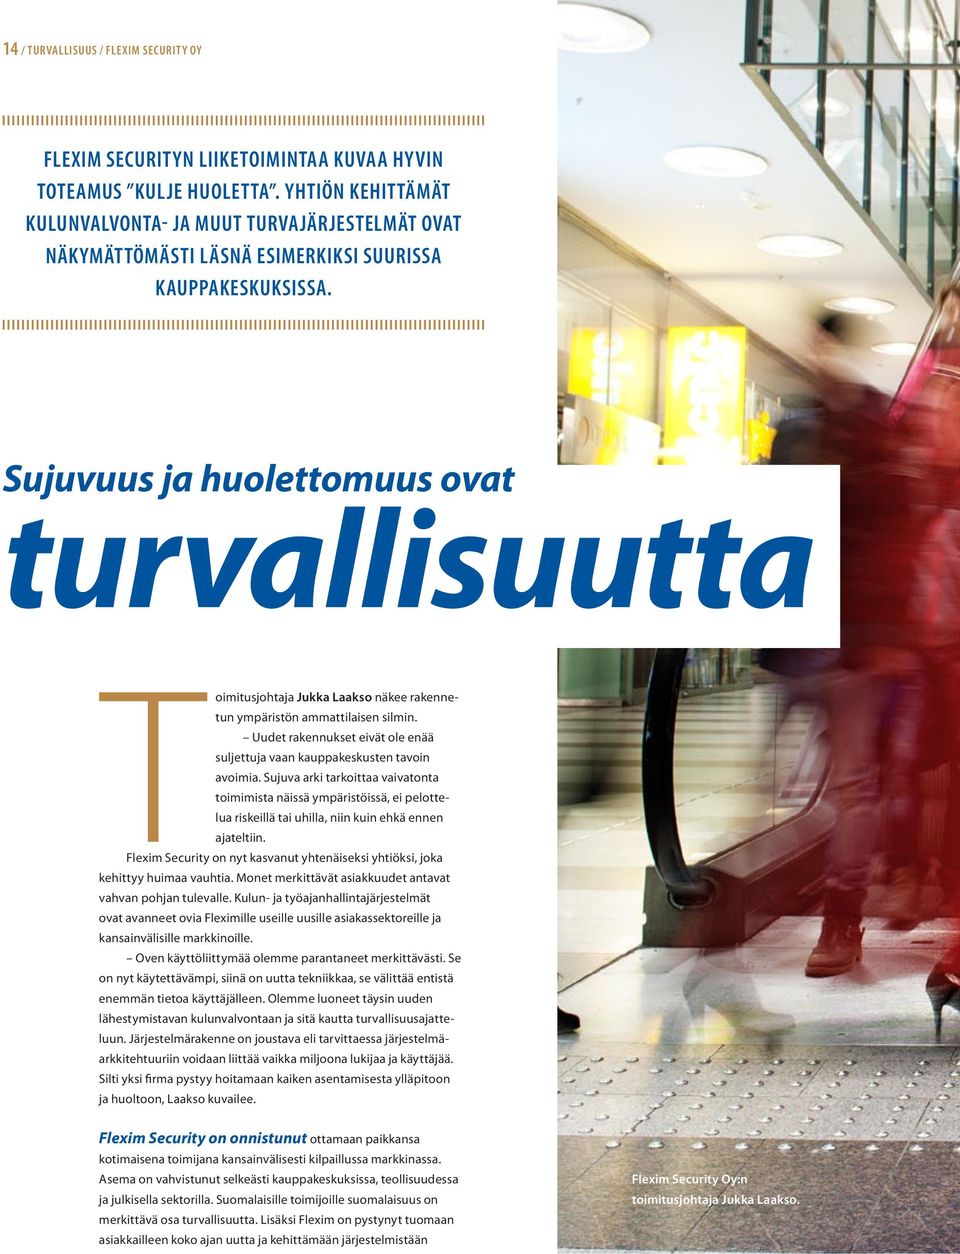 Sujuvuus ja huolettomuus ovat turvallisuutta Toimitusjohtaja Jukka Laakso näkee rakennetun ympäristön ammattilaisen silmin.